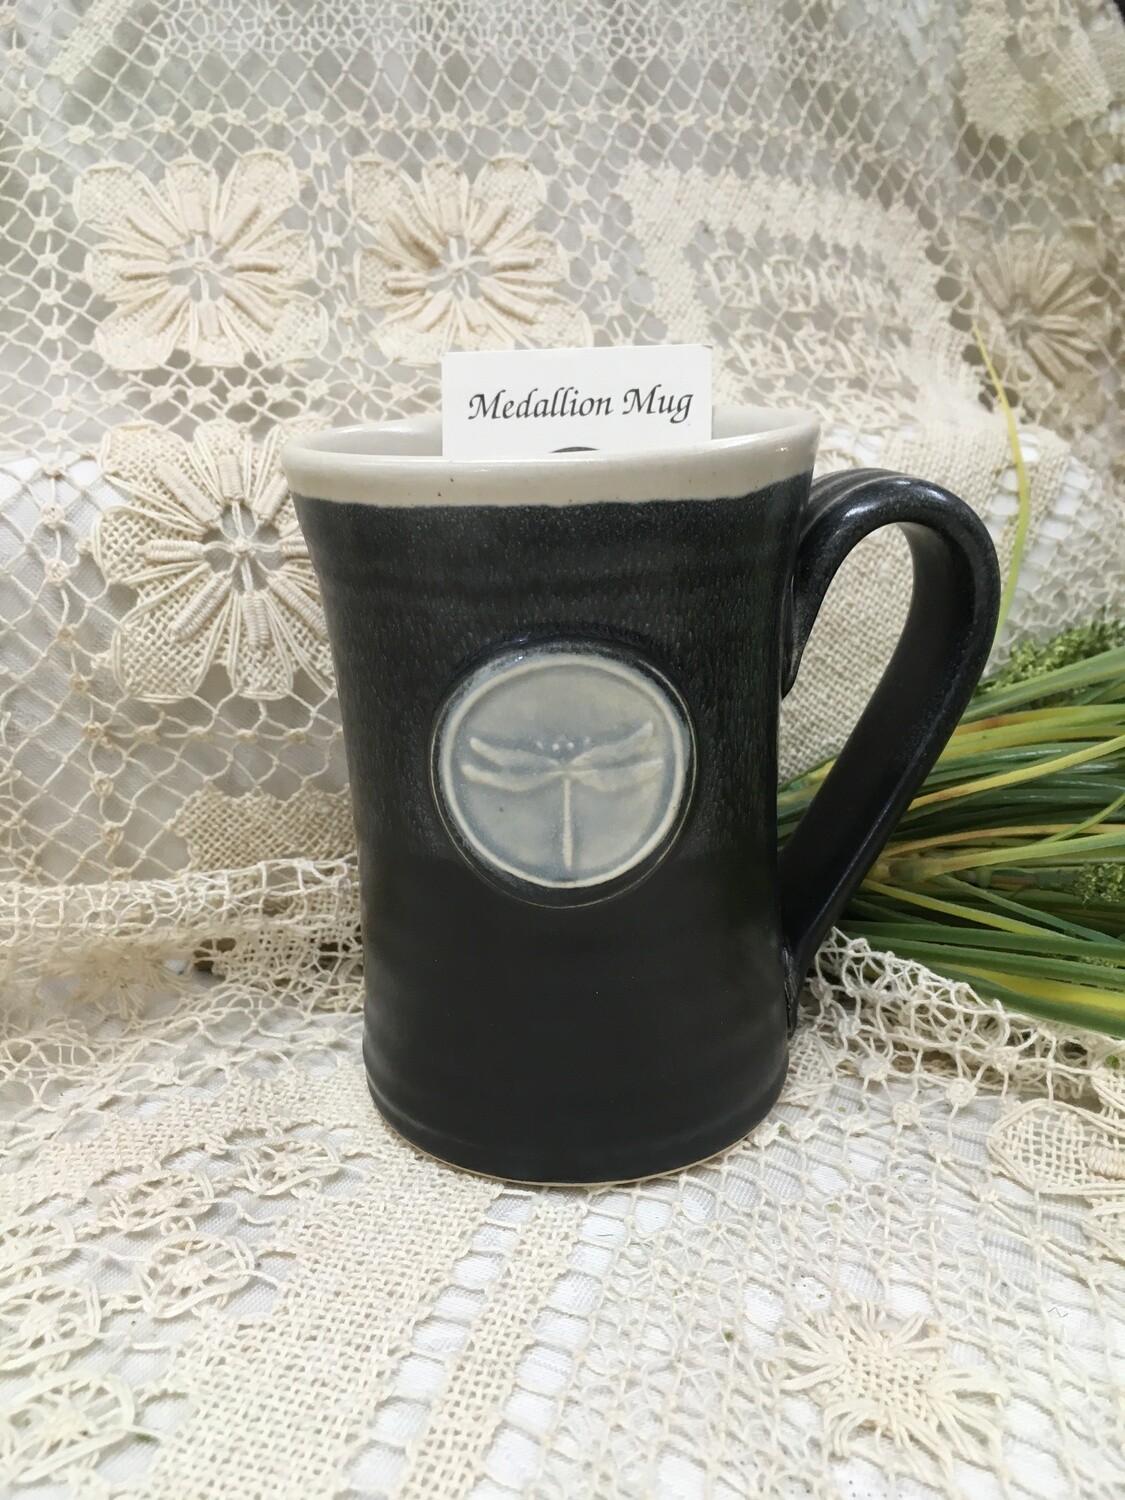 Medallion Large Mug, Dragonfly, Black & White - Pavlo Pottery - Canadian Handmade